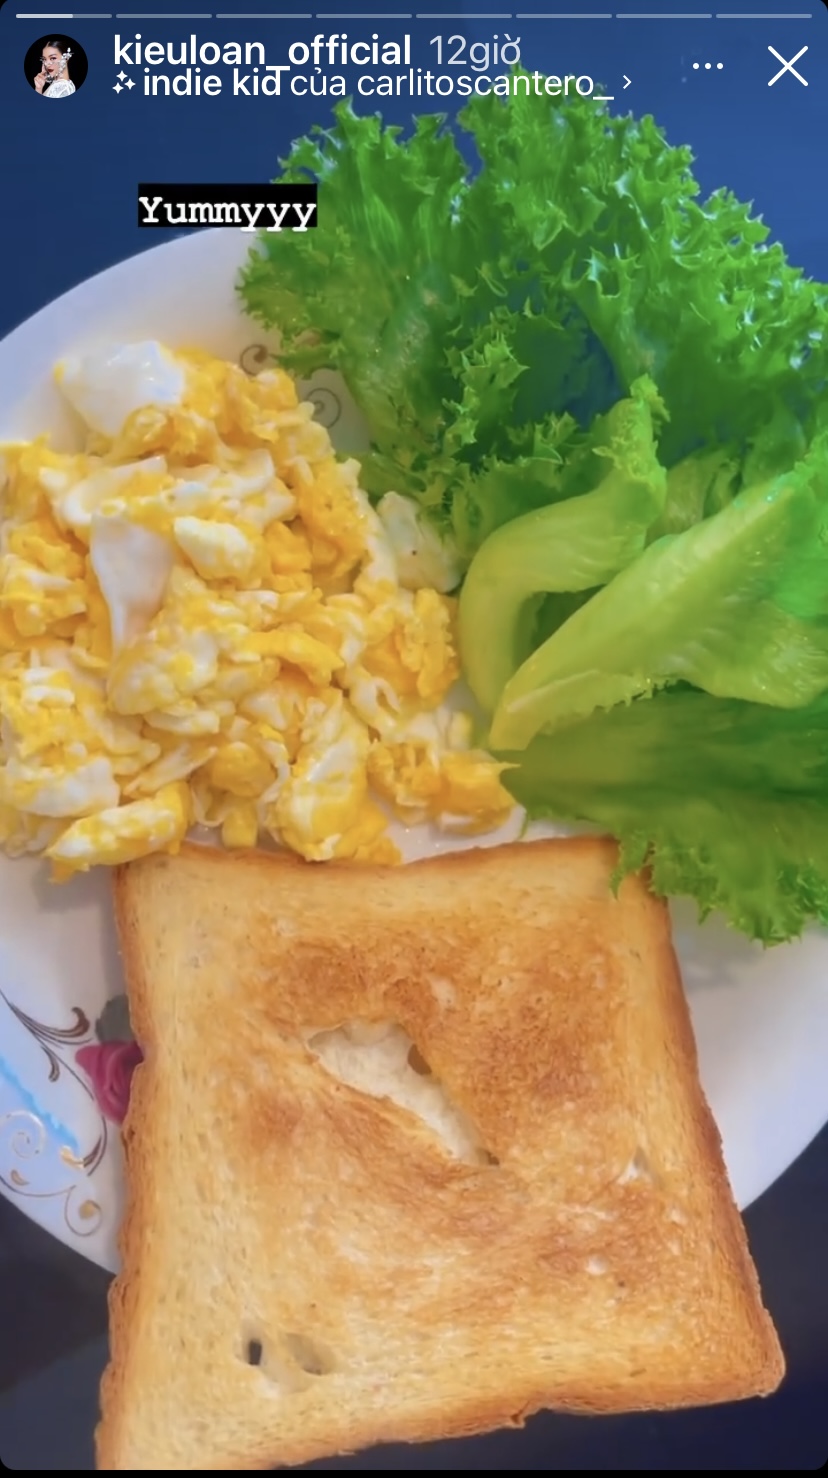 Á hậu Kiều Loan vẫn 'chung thành' với bữa sáng đơn giản cùng bánh mì nướng vàng và trứng.